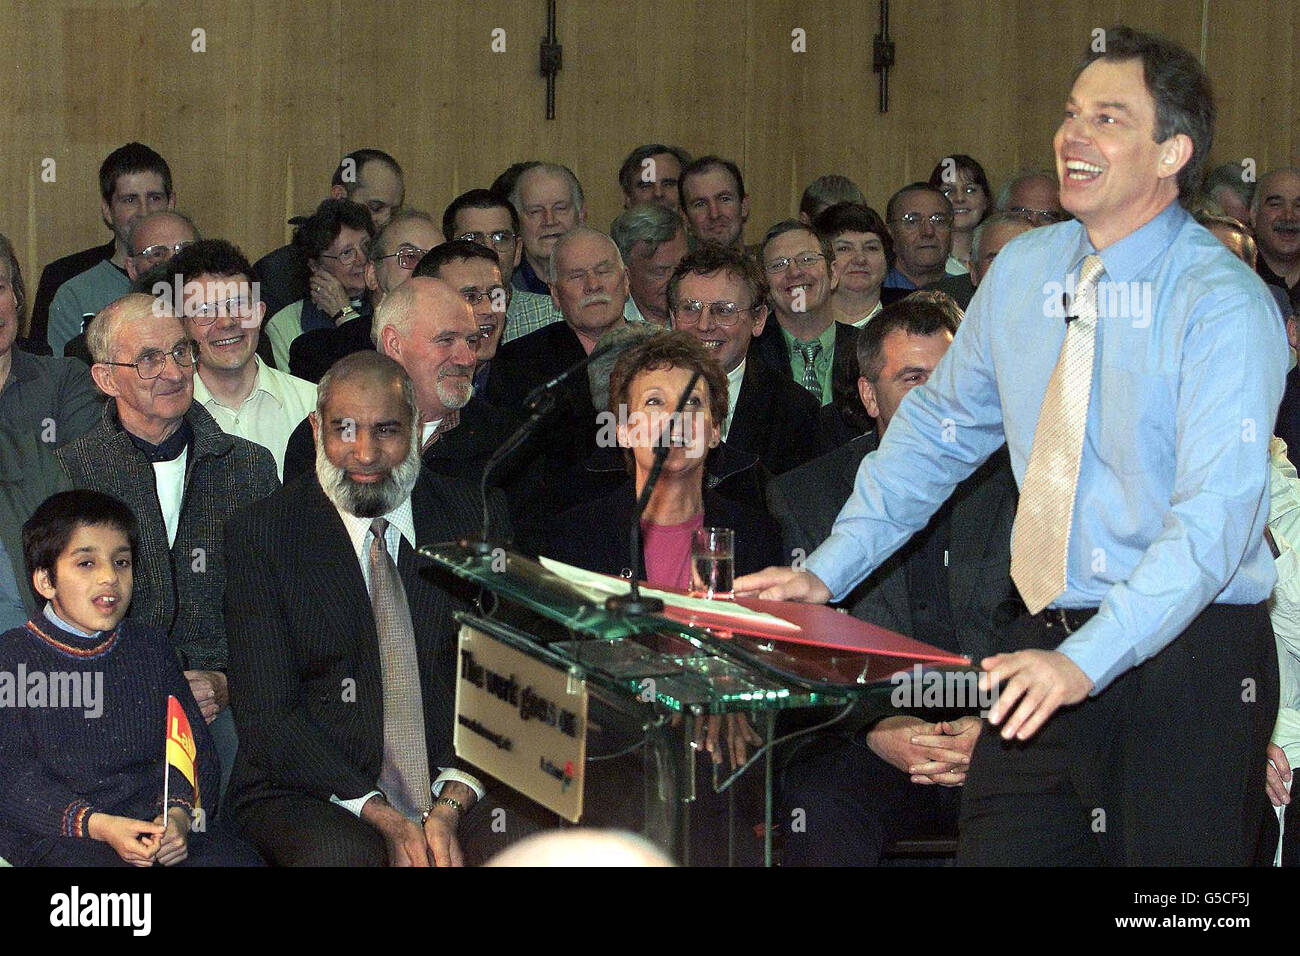 Il primo Ministro Tony Blair ride durante una sessione di domande e risposte alla Kaim Hill Primary School di Aberdeen. Stava parlando dopo la sua prima campagna elettorale in Scozia, una visita che lo ha portato a due importanti marginali. * la sua visita in volo lo portò prima Inverness East, Nairn e Lochaber, che i laburisti vinsero dai liberal-democratici nel 1997, ma che ora è vulnerabile al SNP, e poi ad Aberdeen South, dove il laburista è vulnerabile ai lib Dems. Ha difeso la formula che determina la quota di spesa pubblica della Scozia, e ha detto che non aveva piani per cambiarla. Foto Stock